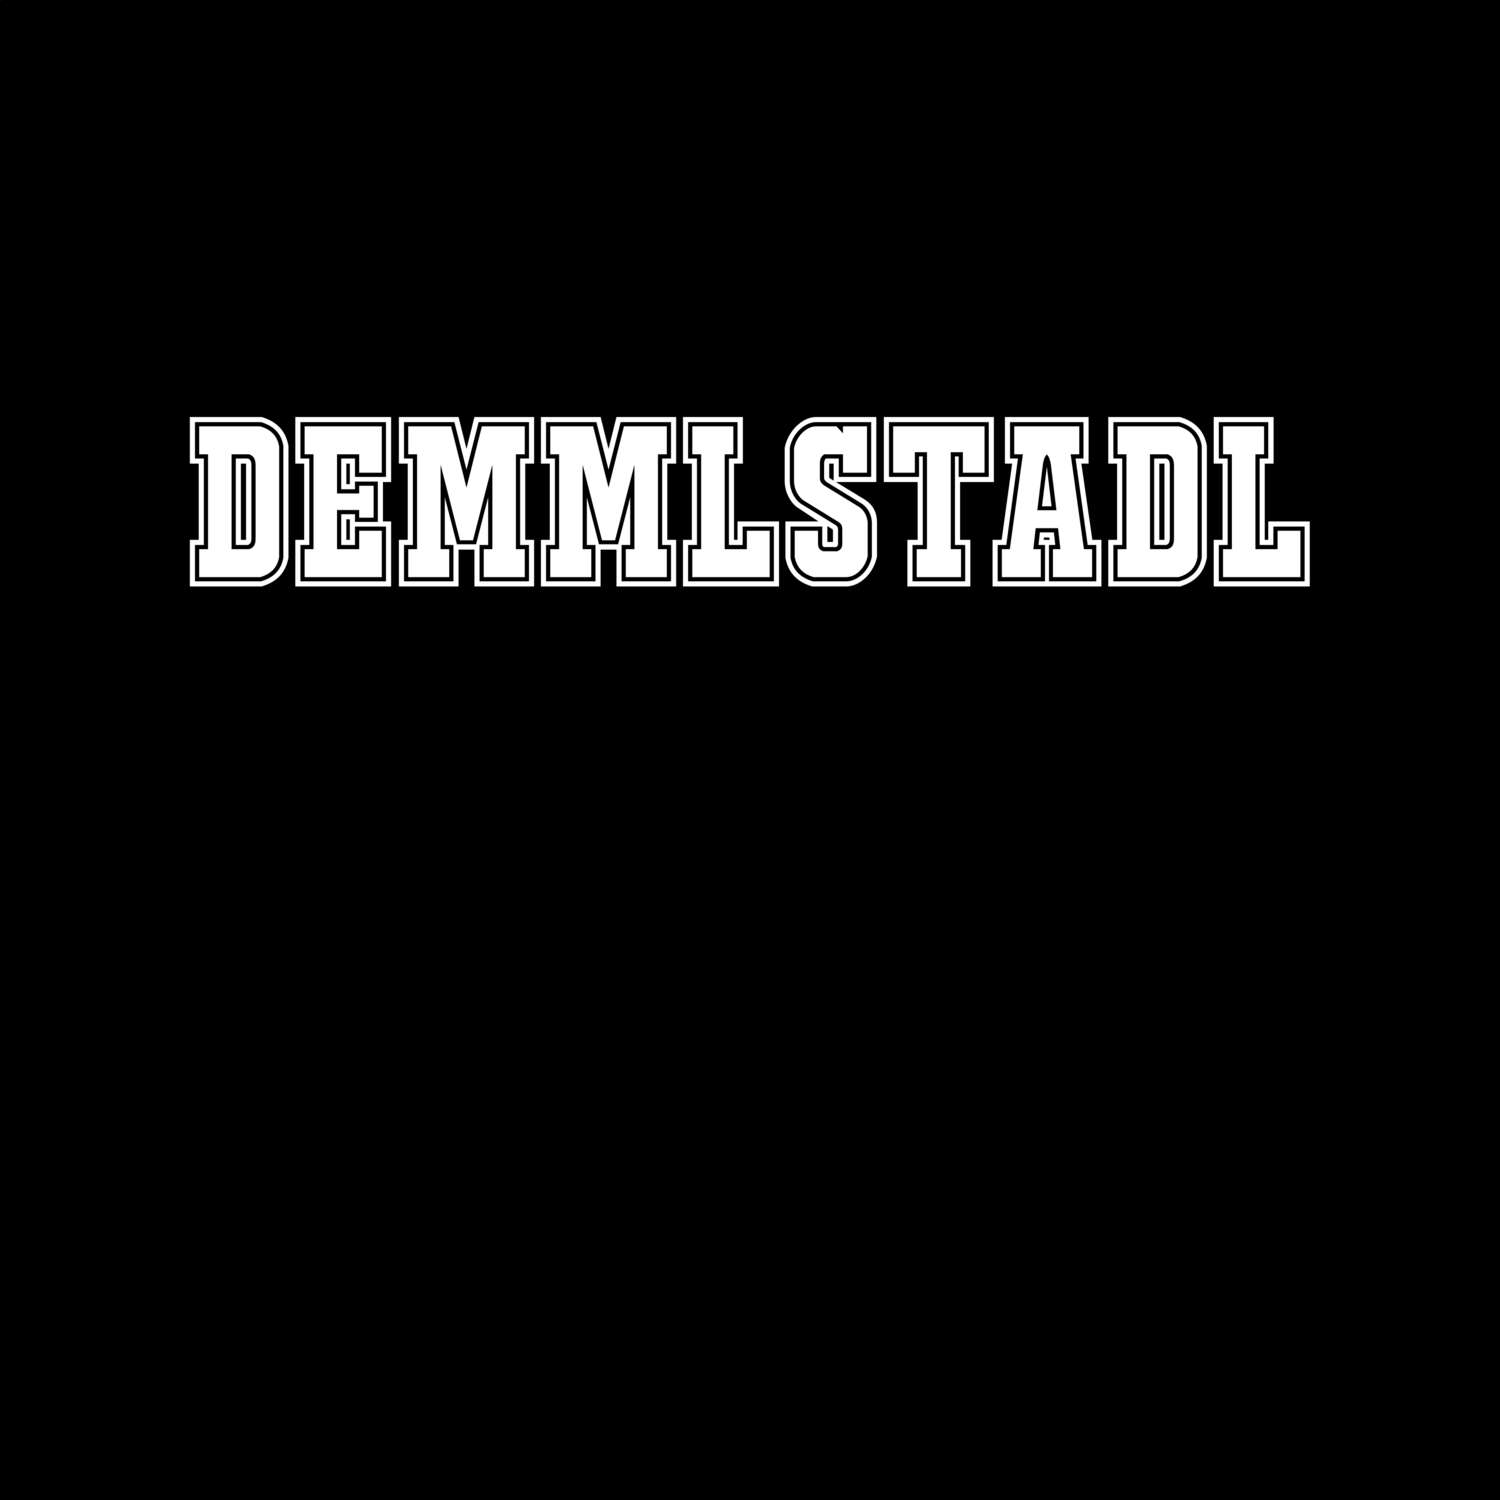 Demmlstadl T-Shirt »Classic«